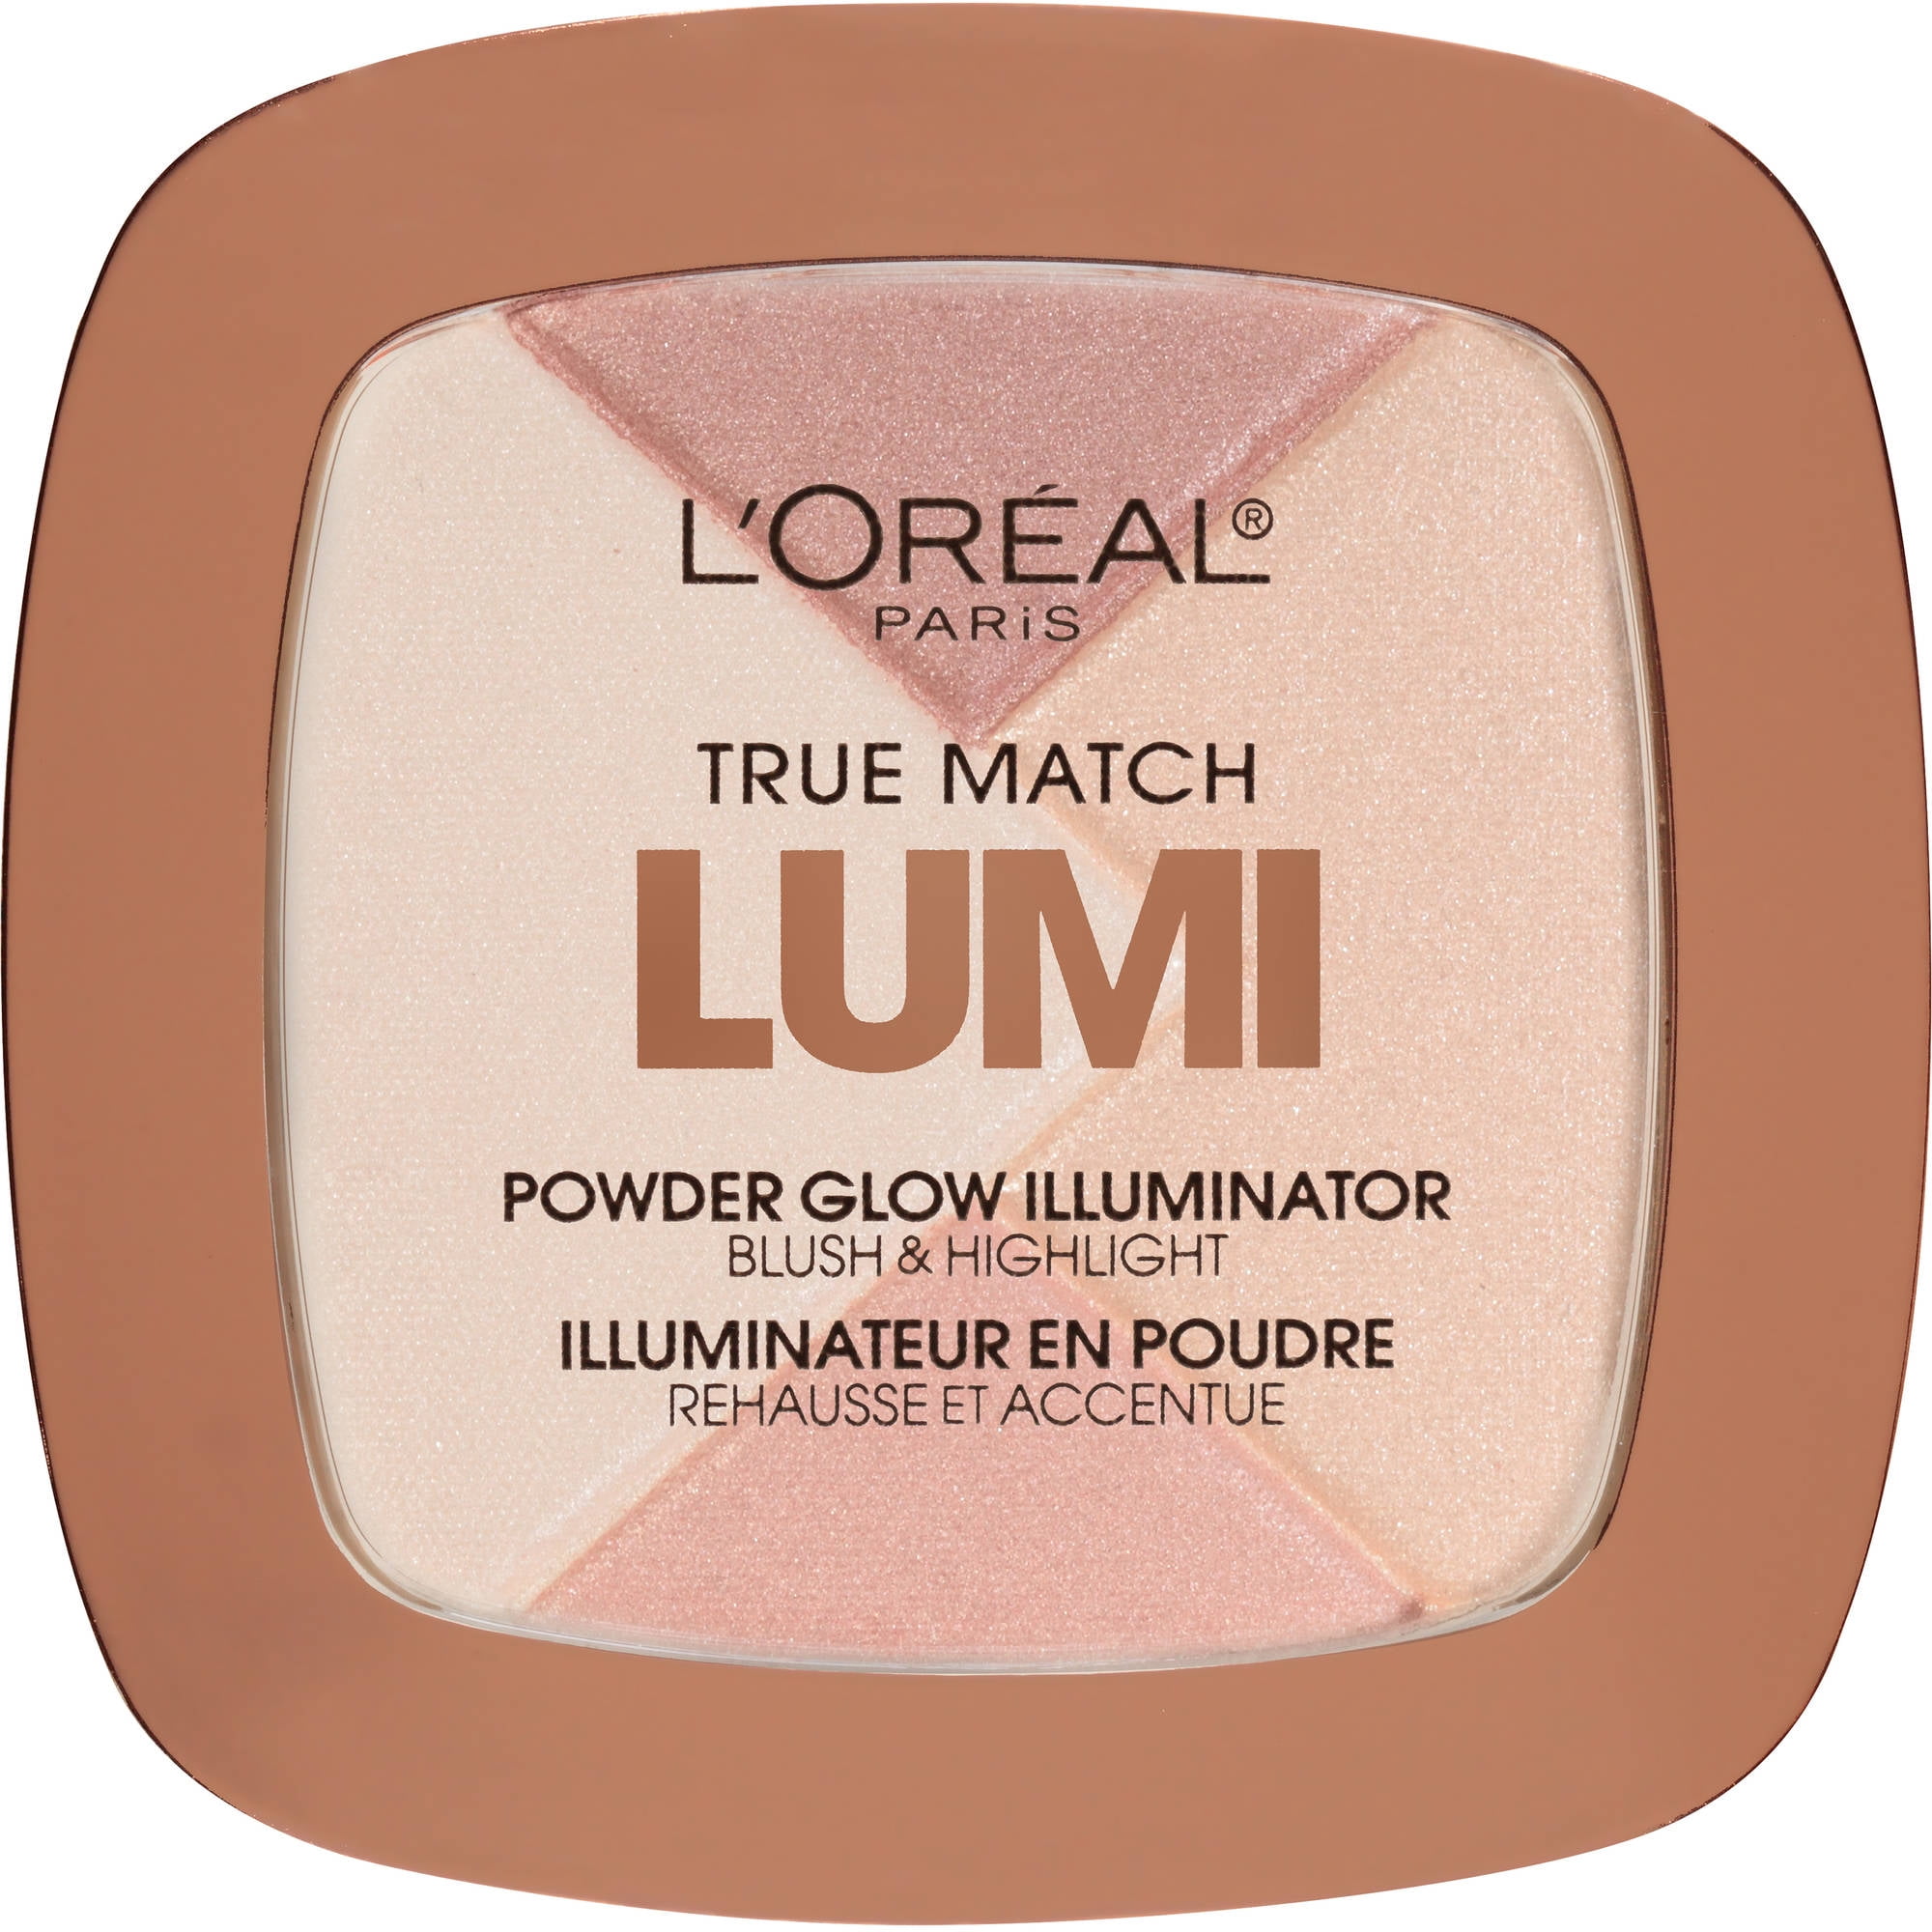 True Match Lumi Powder Glow Illuminator, Ice Walmart.com